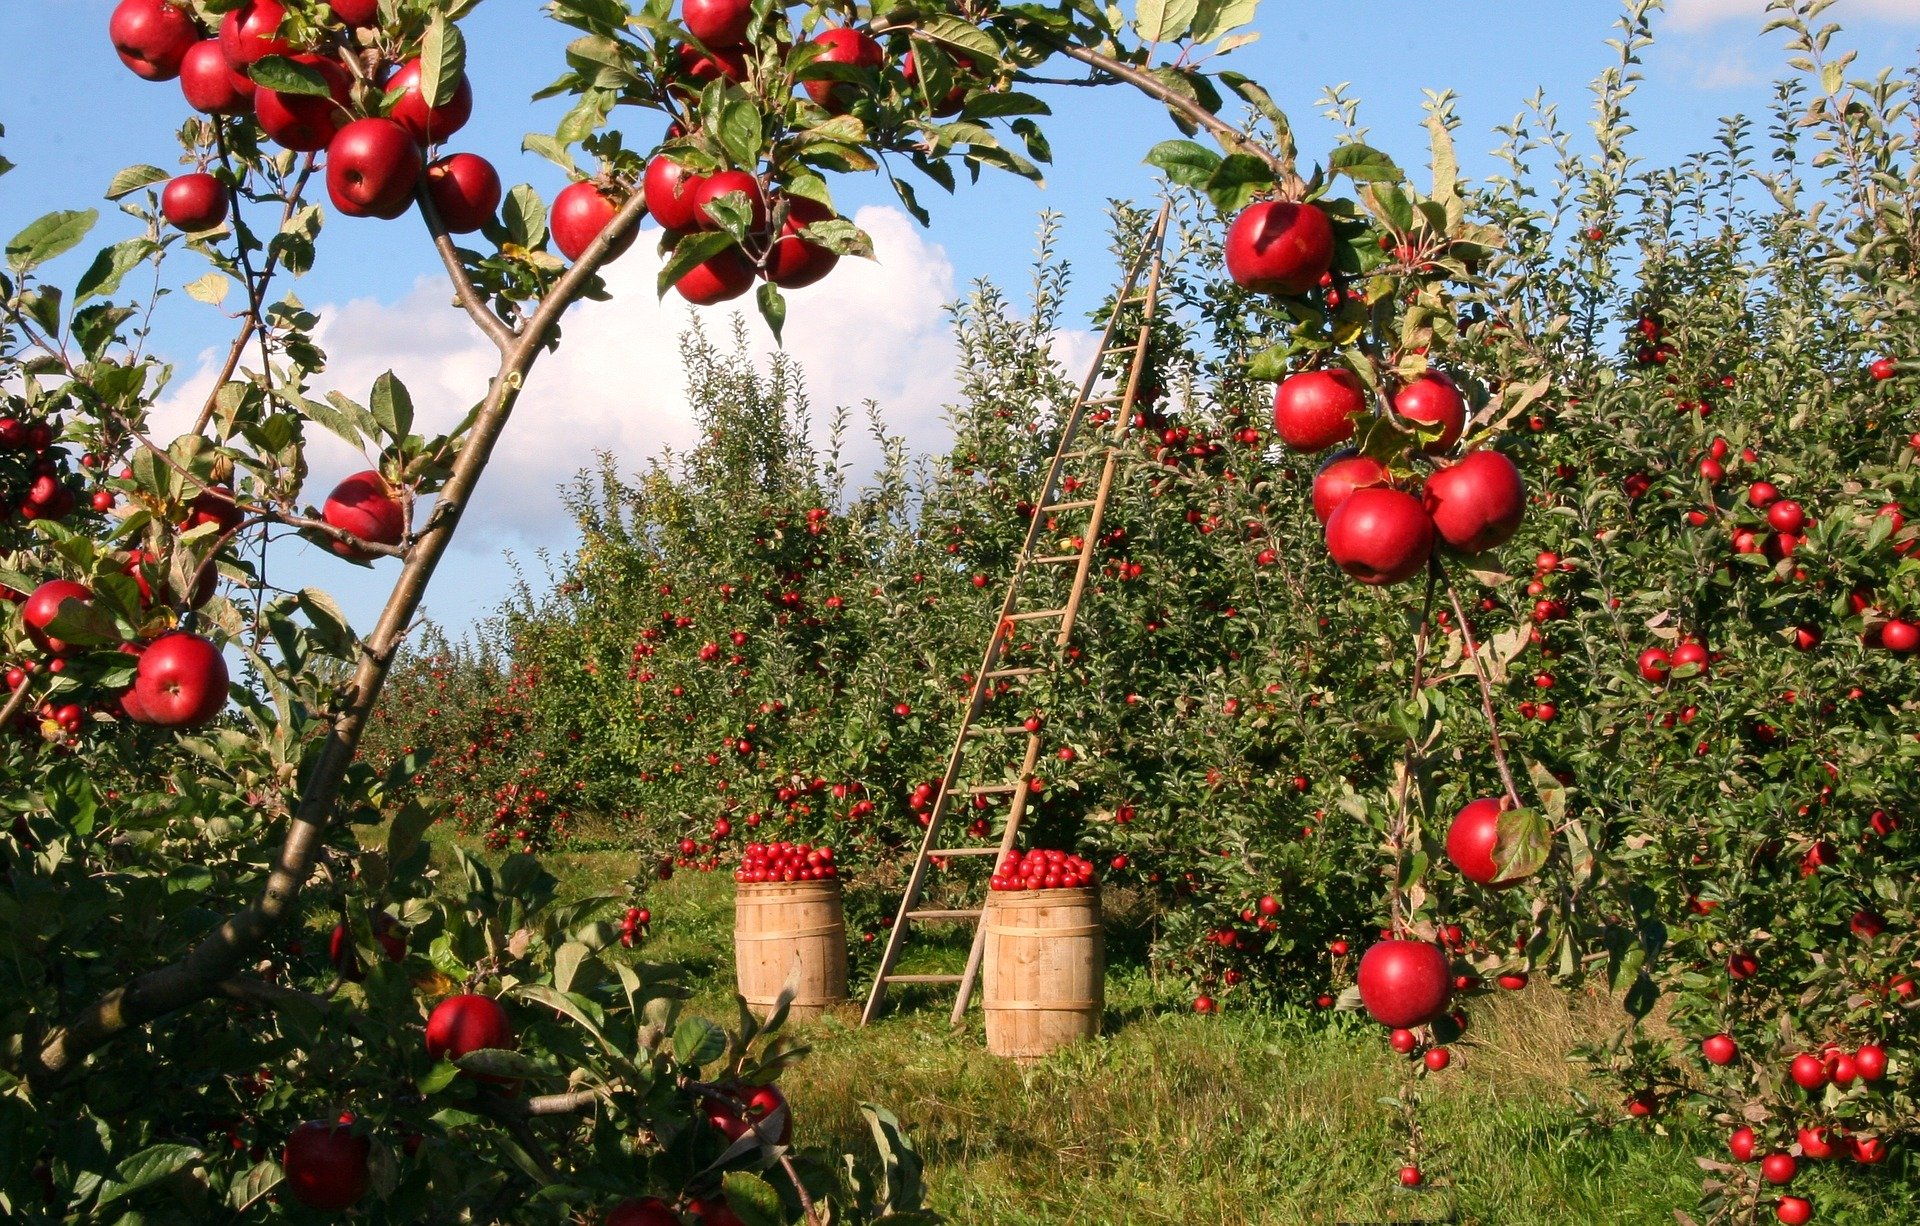 Lire la suite à propos de l’article Atelier fabrication de jus de pomme